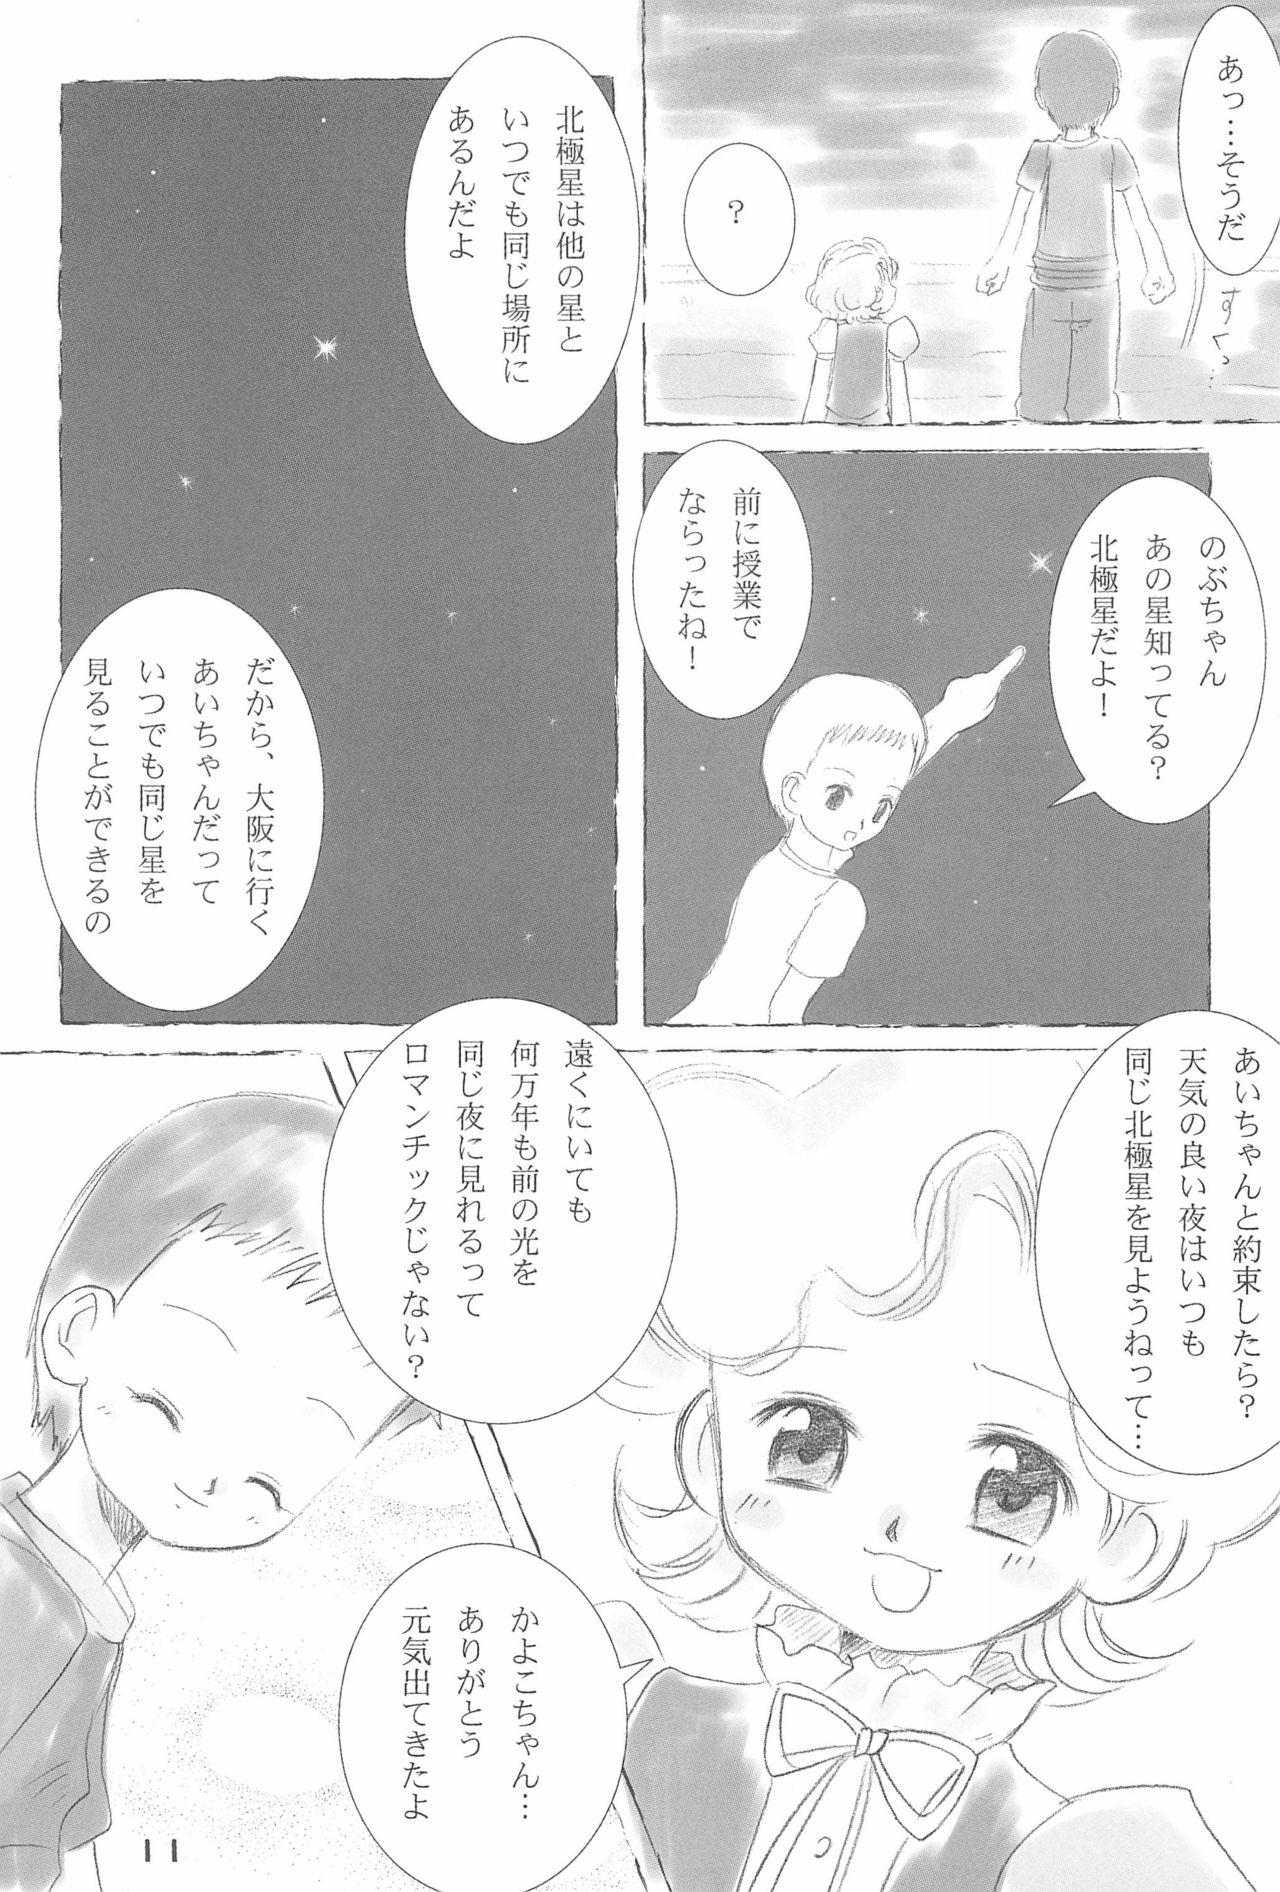 Booty Daisuki. - Ojamajo doremi Wet Pussy - Page 13